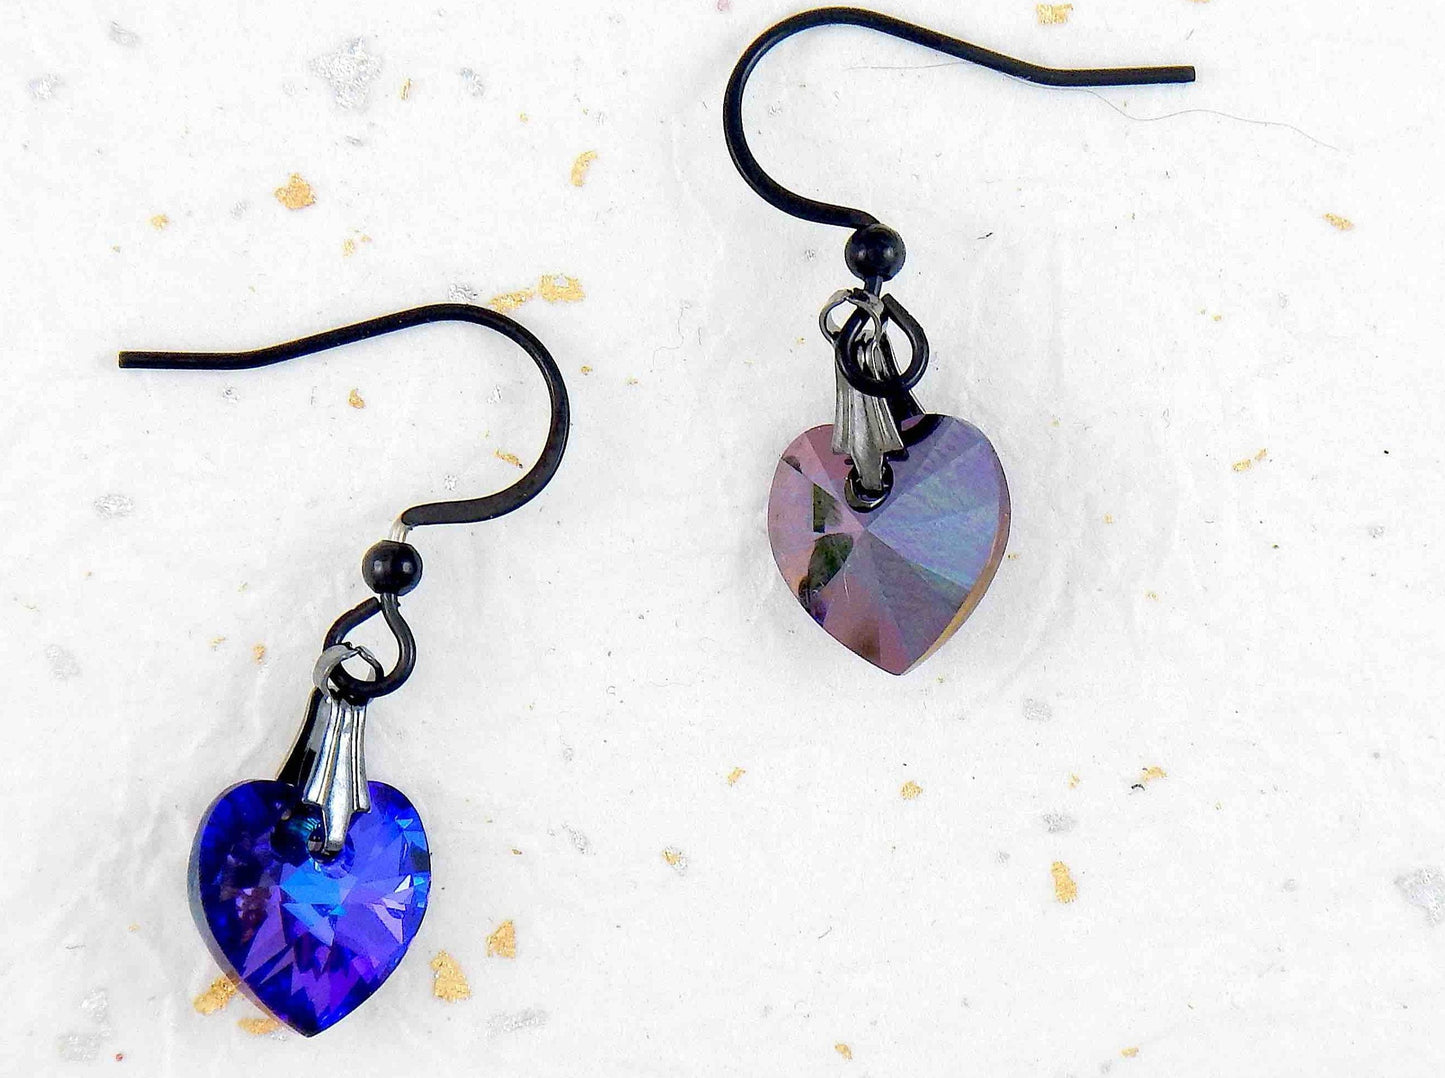 Boucles d'oreilles courtes petits coeurs de cristal Swarovski facetté 10mm Heliotrope (bleu-violet profond), crochets acier inoxydable noir